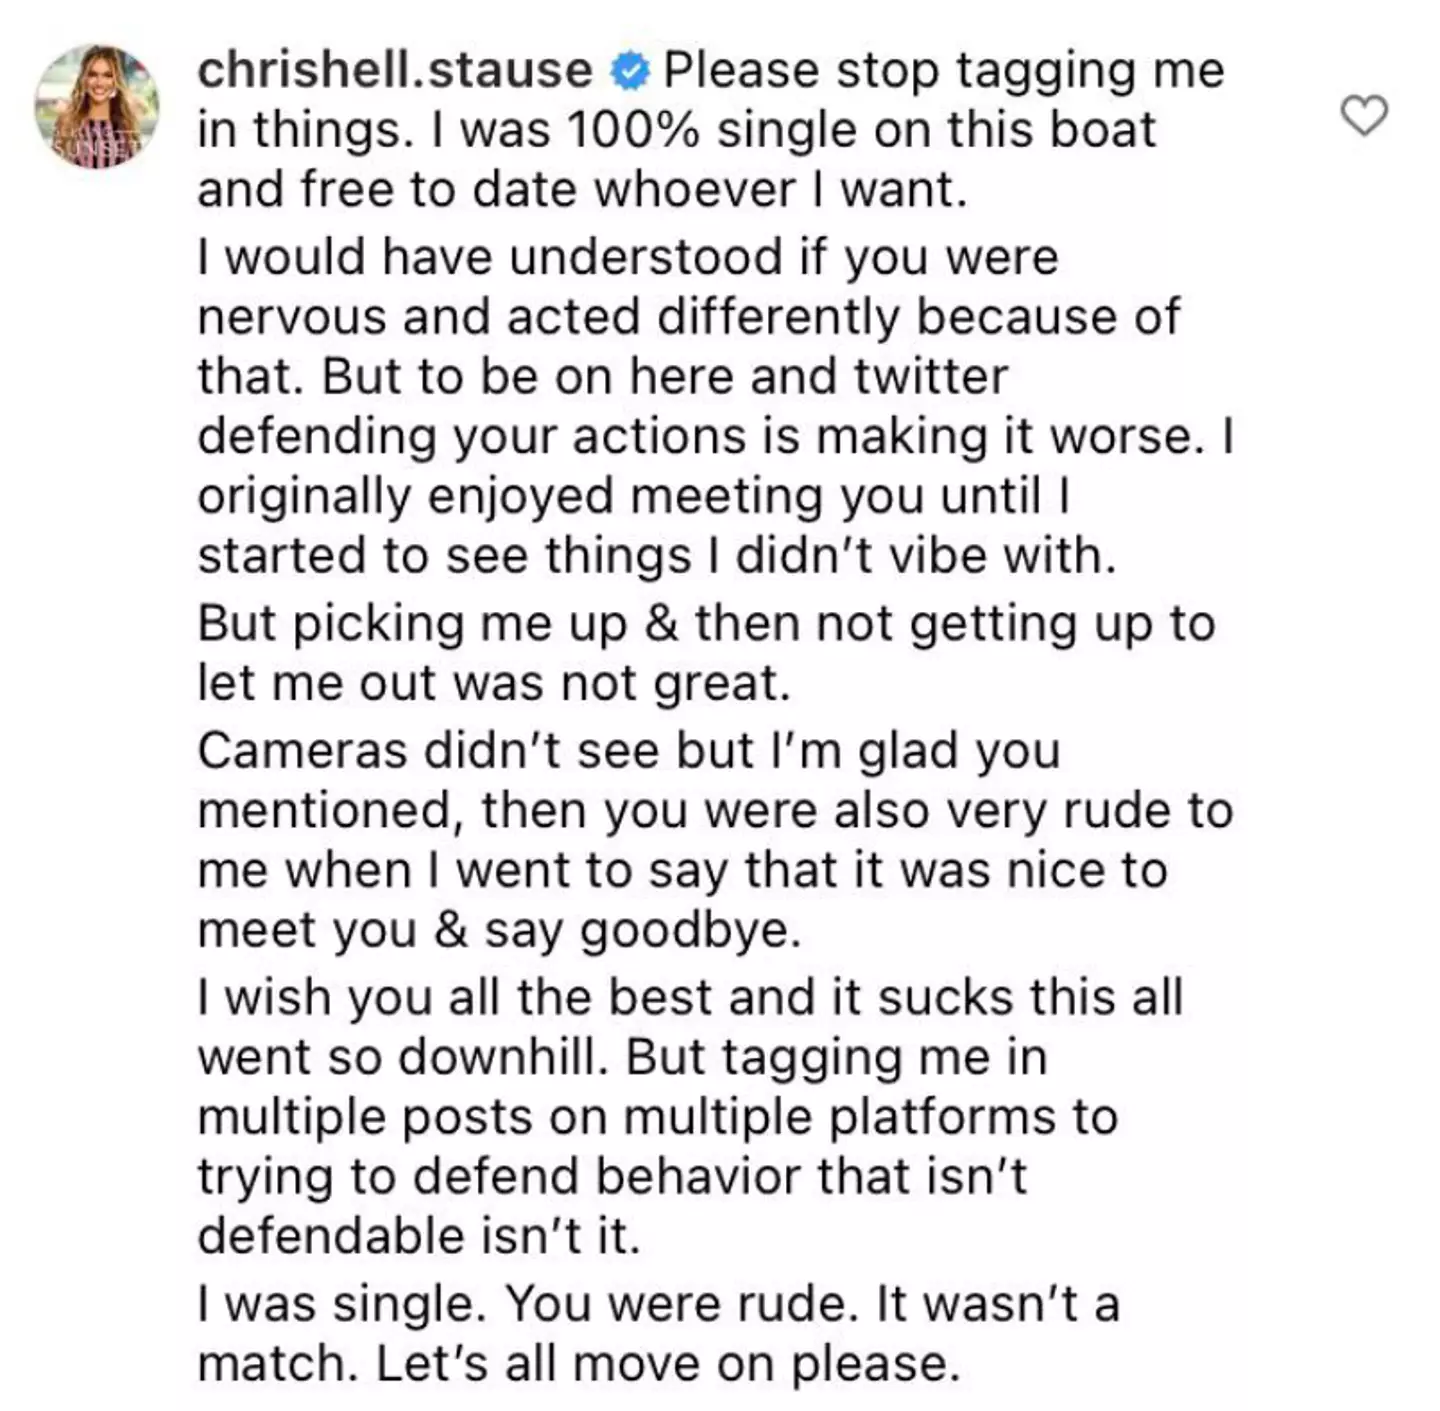 Chrishell responded on Instagram (